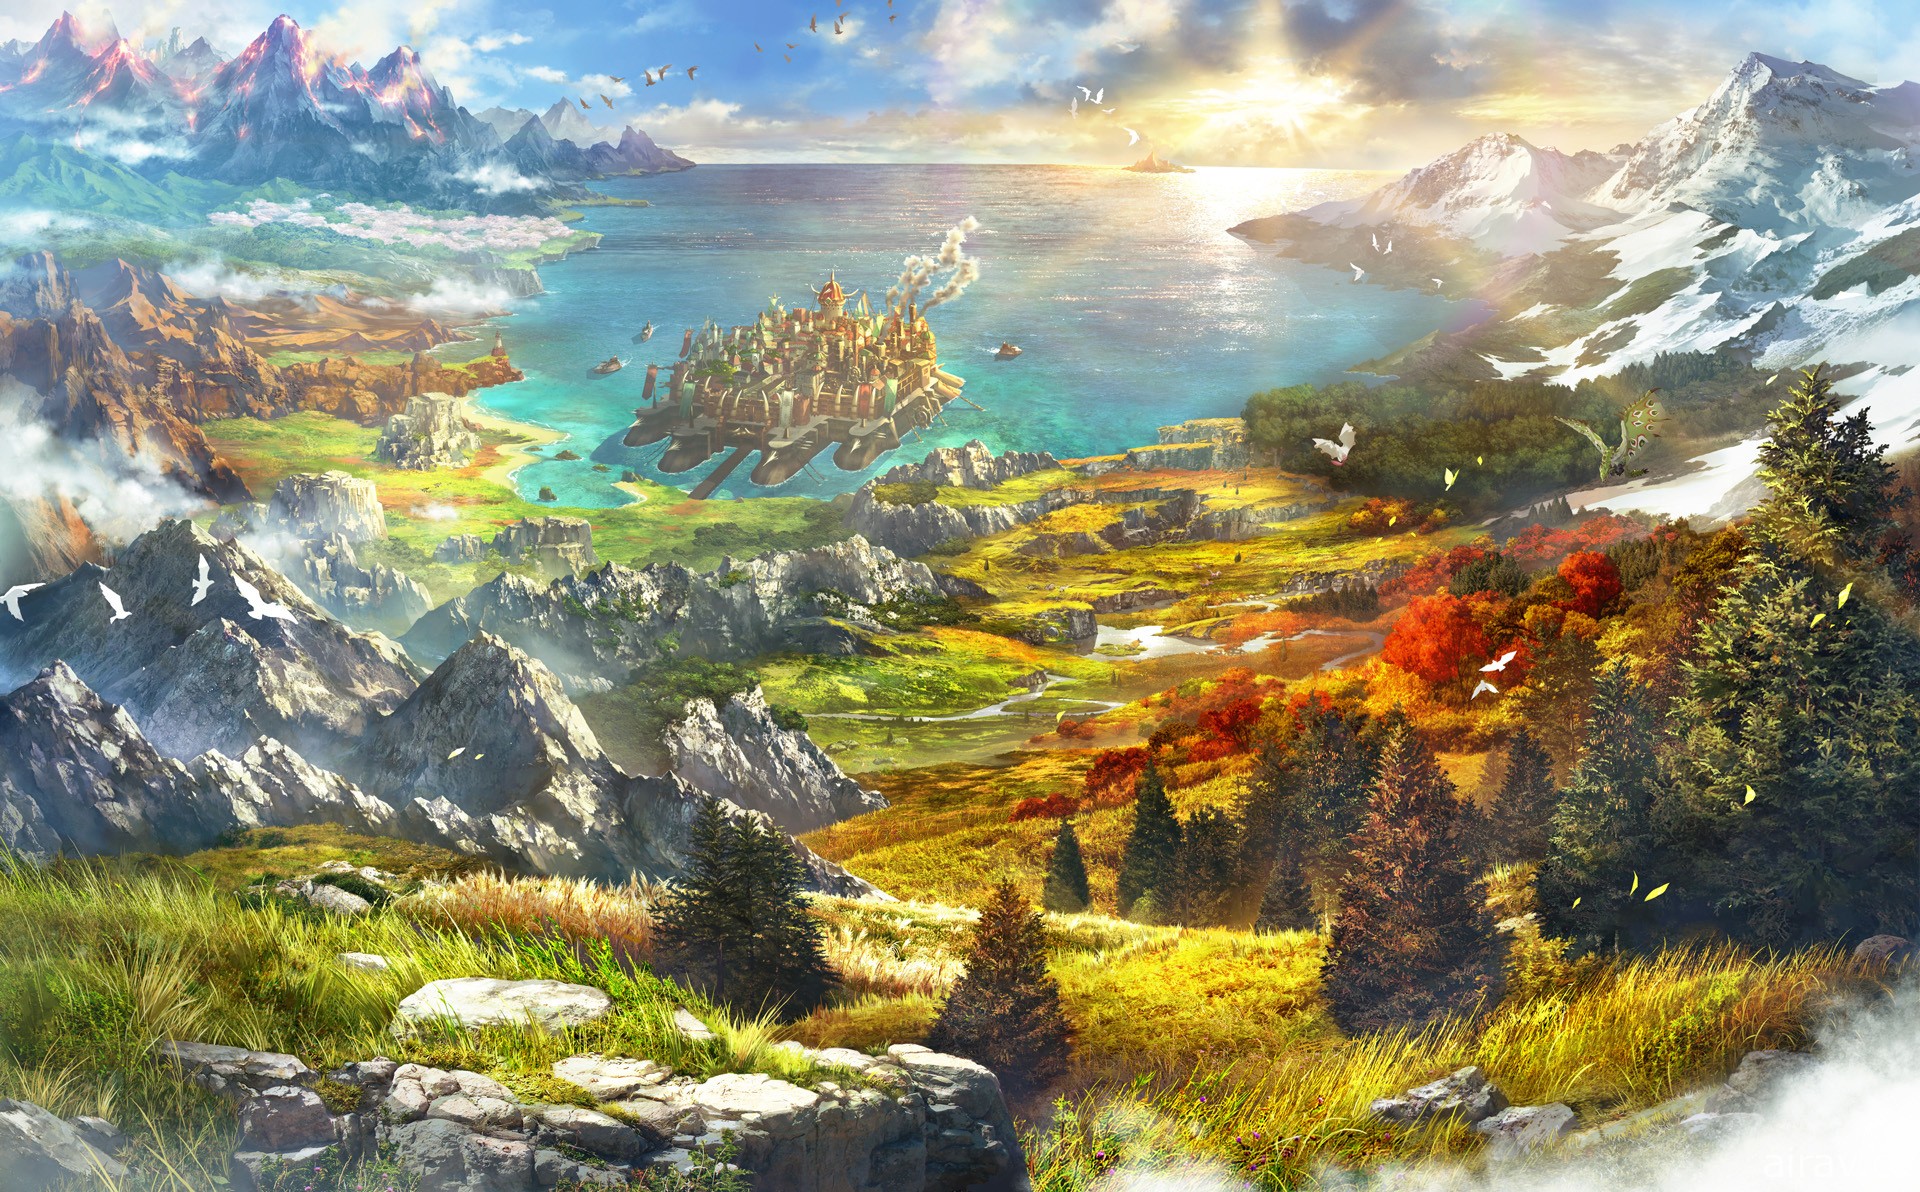 【E3 21】《魔物獵人 物語 2》樹屋直播揭露 40 分鐘實機遊玩內容 體驗版 25 日登場